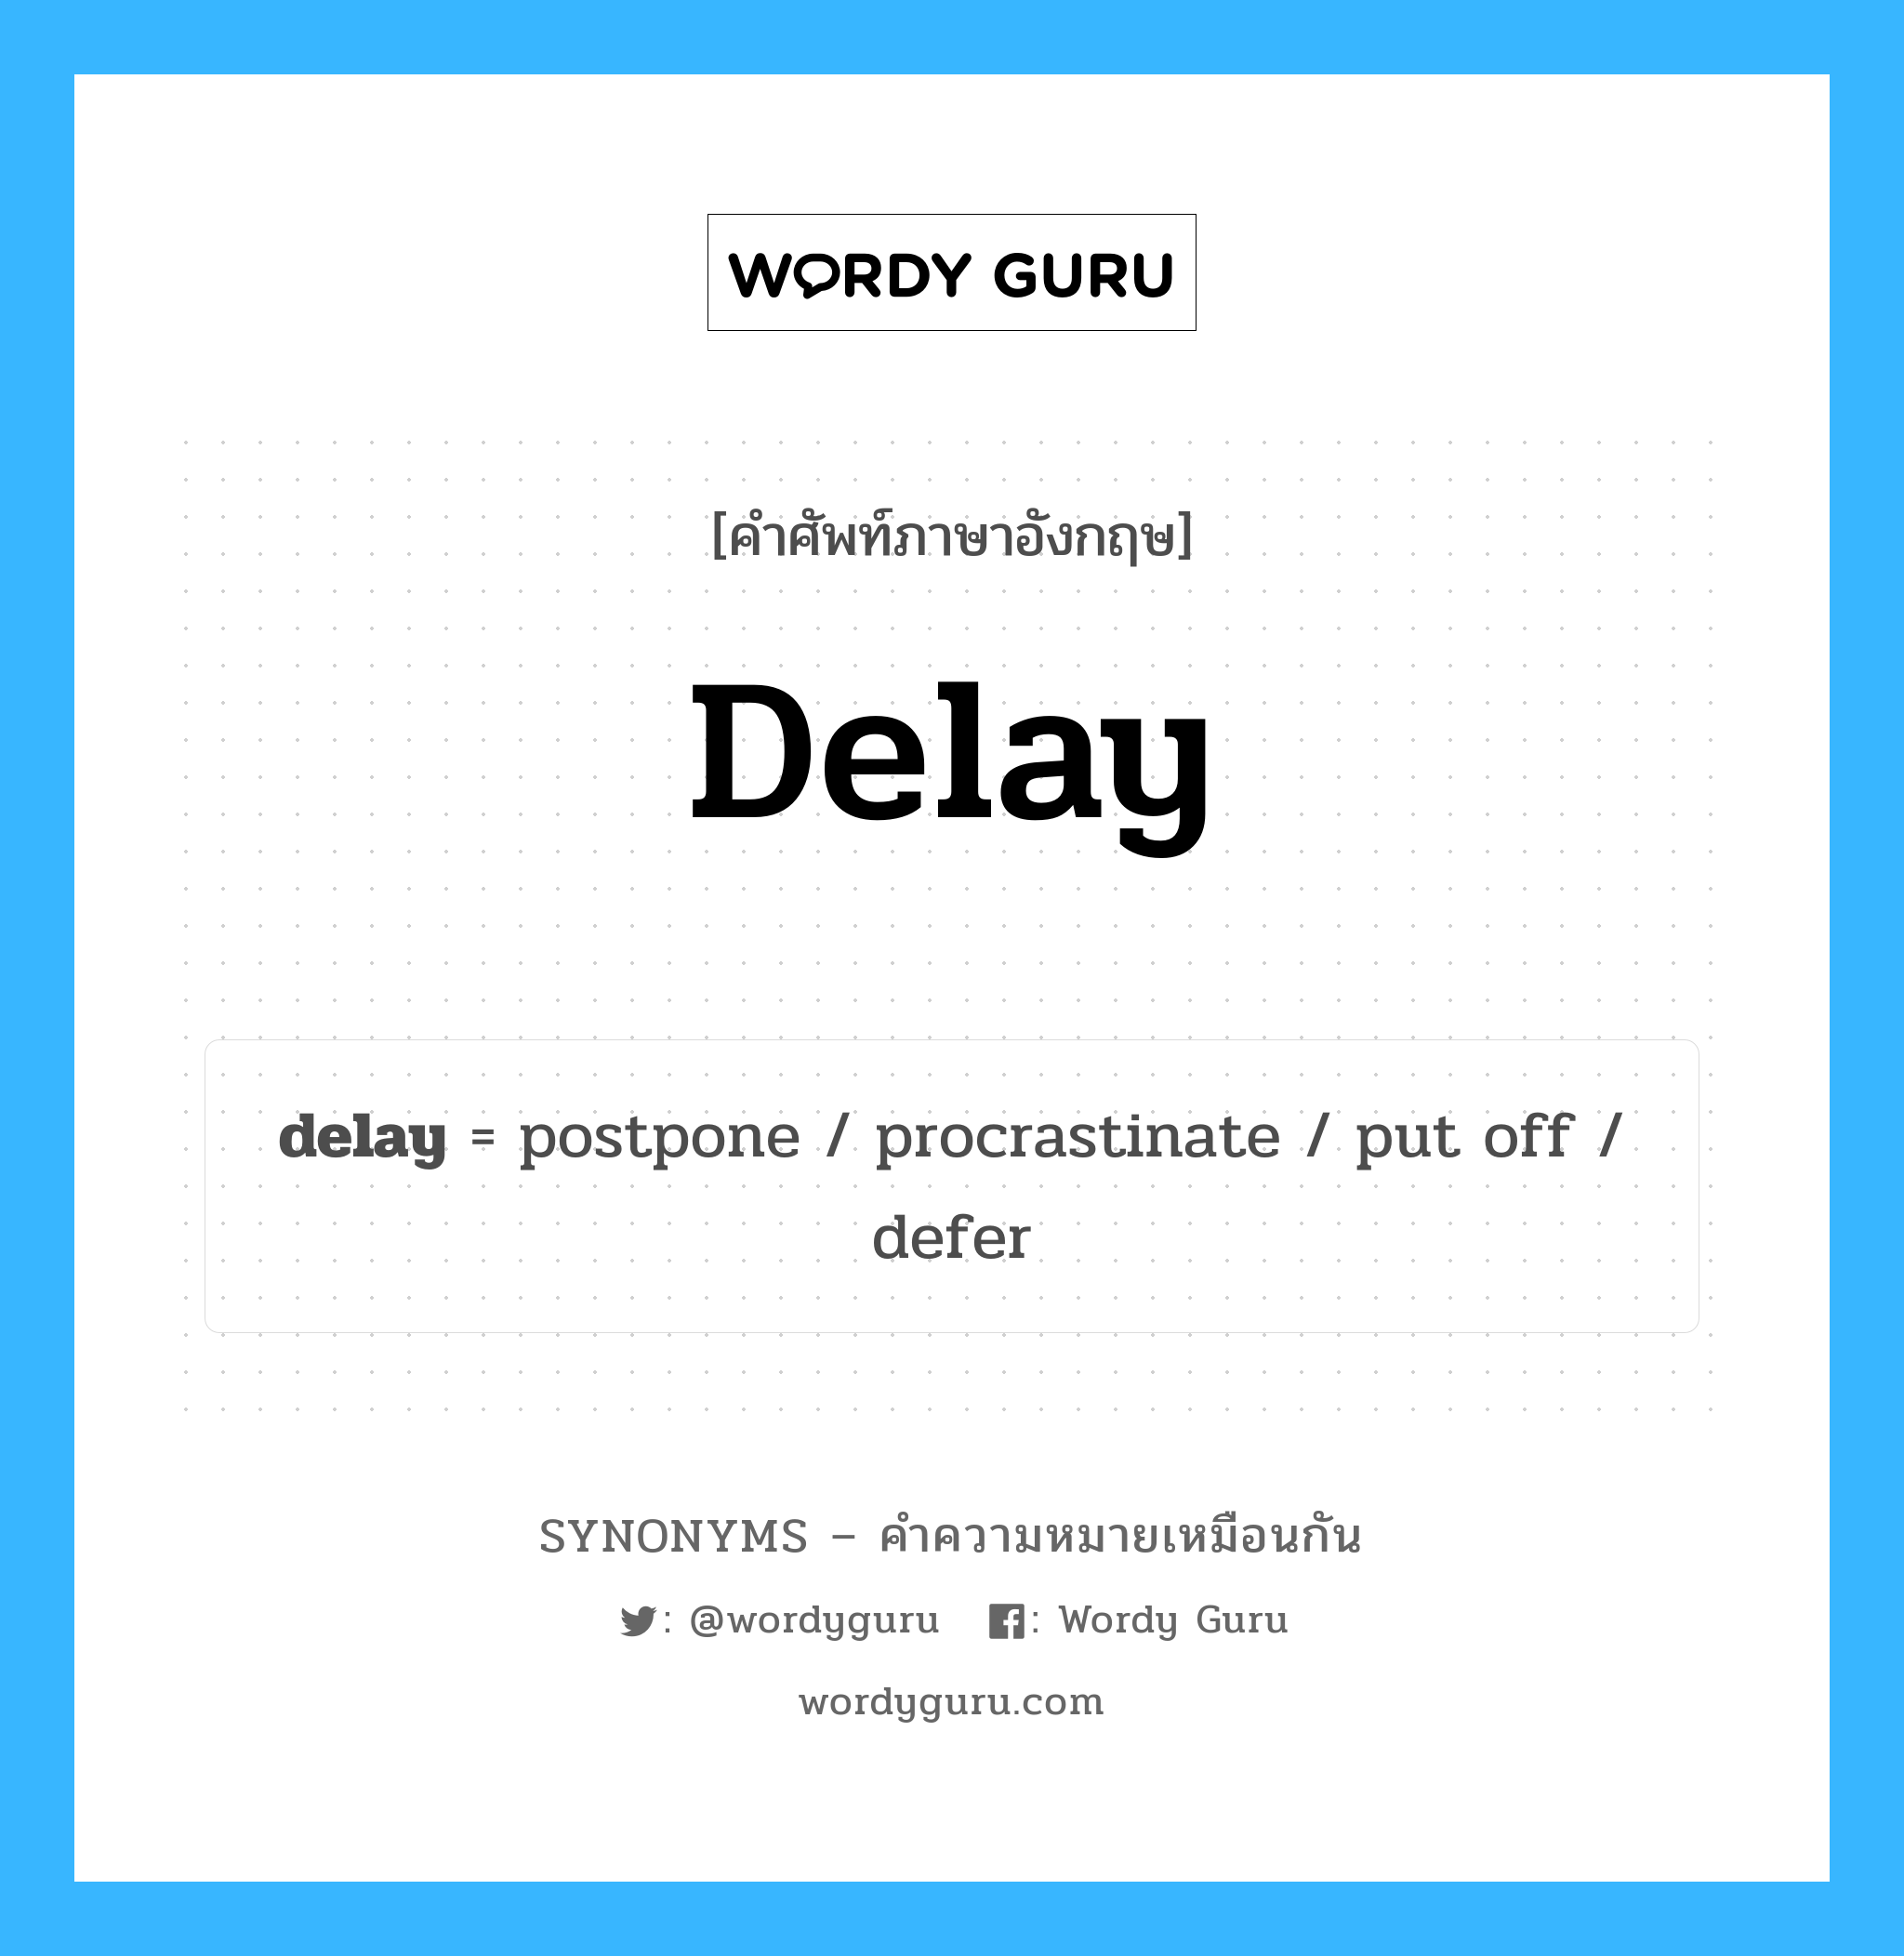 delay เป็นหนึ่งใน postpone และมีคำอื่น ๆ อีกดังนี้, คำศัพท์ภาษาอังกฤษ delay ความหมายคล้ายกันกับ postpone แปลว่า เลื่อนออกไป หมวด postpone